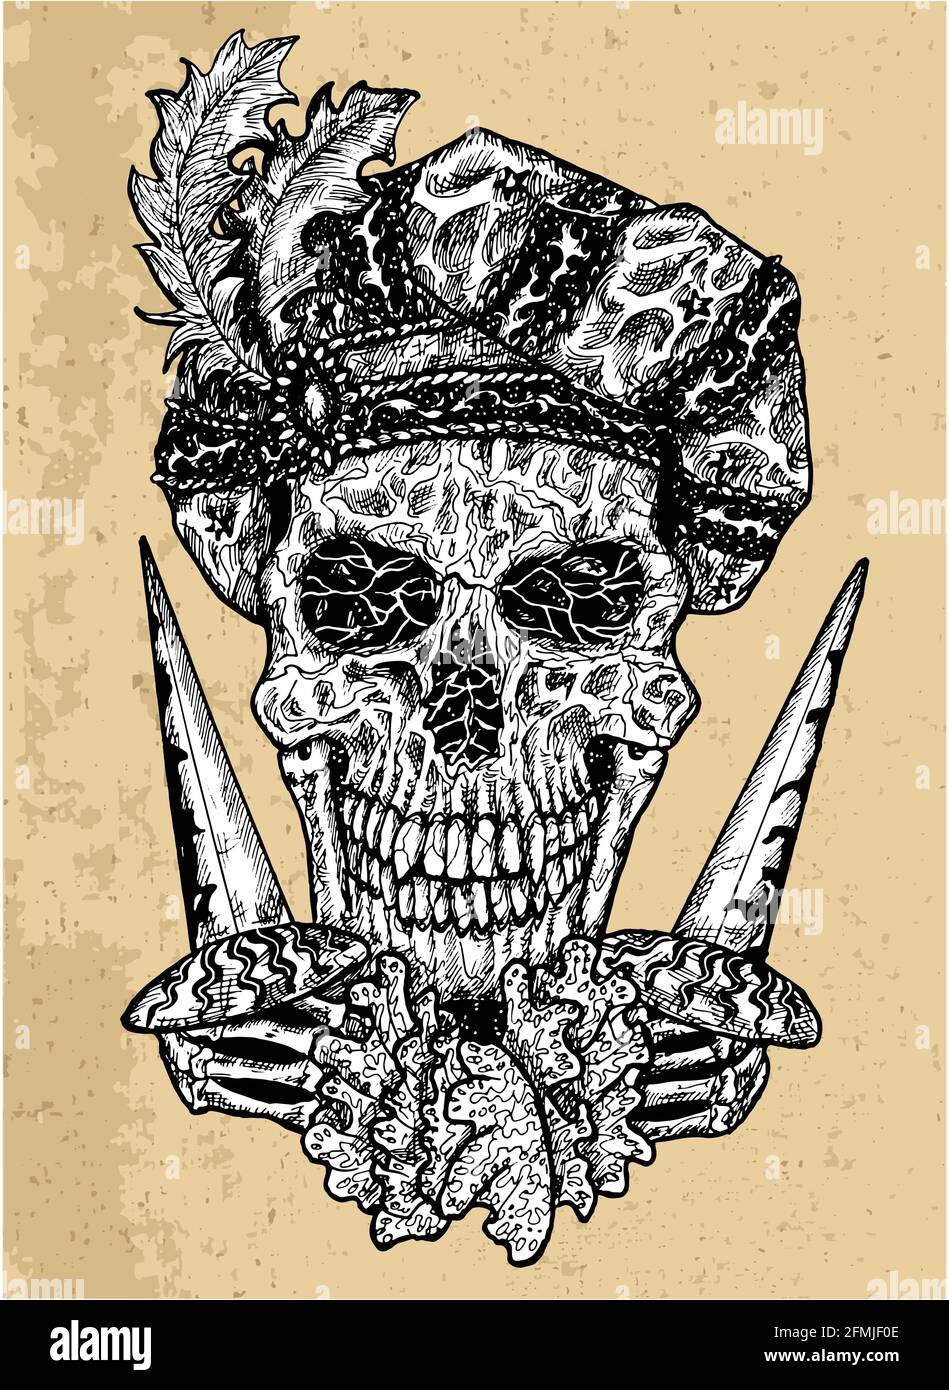 Texturierte Illustration eines gruseligen Totenschädel-Portraits mit mittelalterlicher Mütze und Dolchmessern. Mystischer Hintergrund für Halloween, Esoterik, Gothic, Occul Stock Vektor